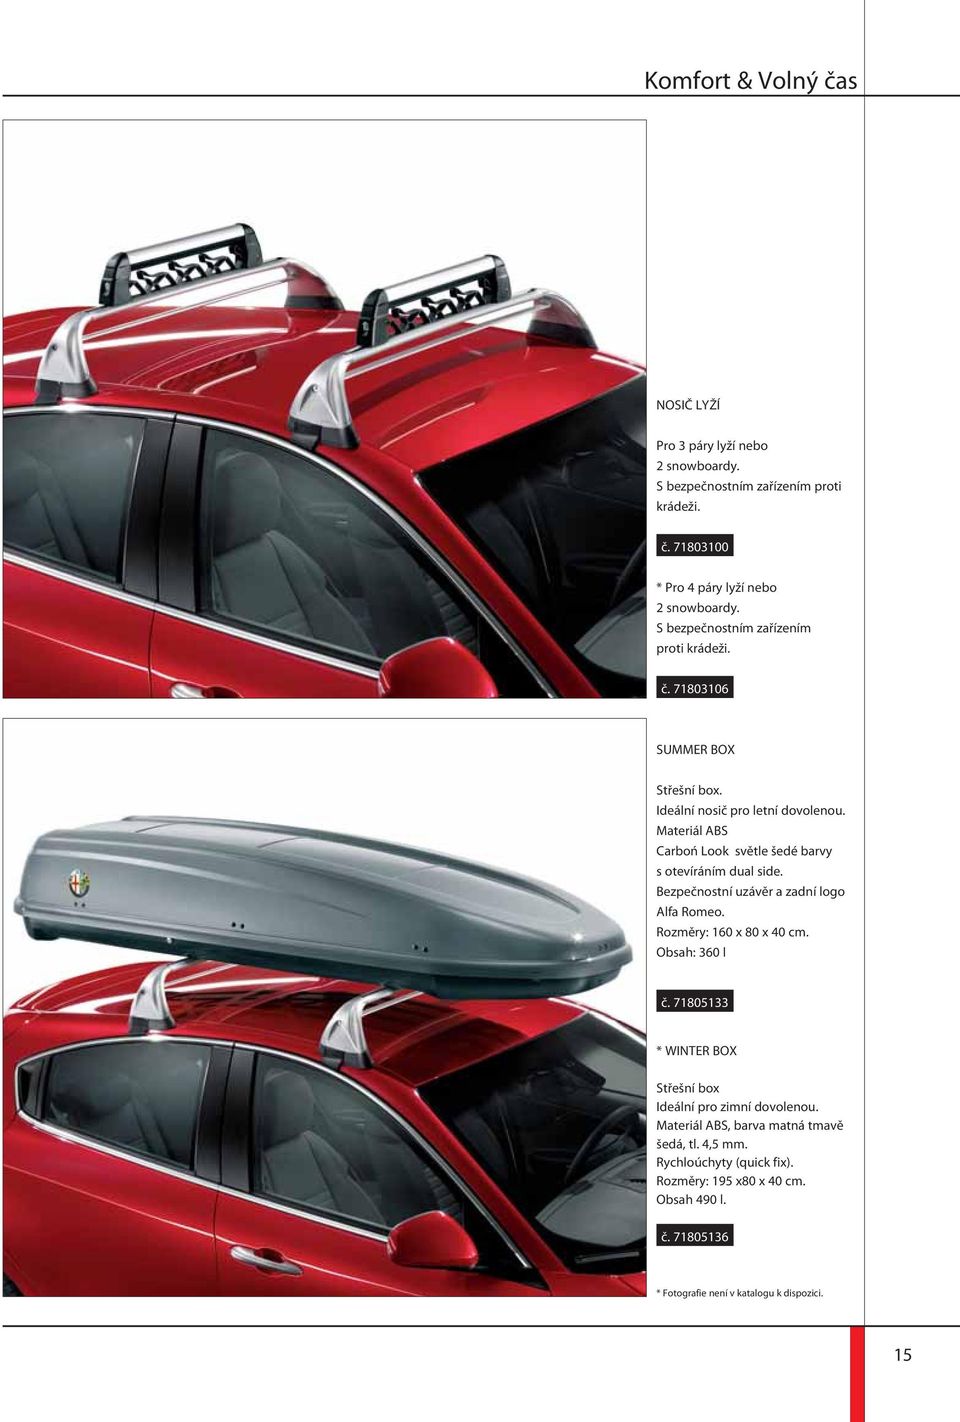 Materiál ABS Carboń Look světle šedé barvy s otevíráním dual side. Bezpečnostní uzávěr a zadní logo Alfa Romeo. Rozměry: 160 x 80 x 40 cm. Obsah: 360 l č.